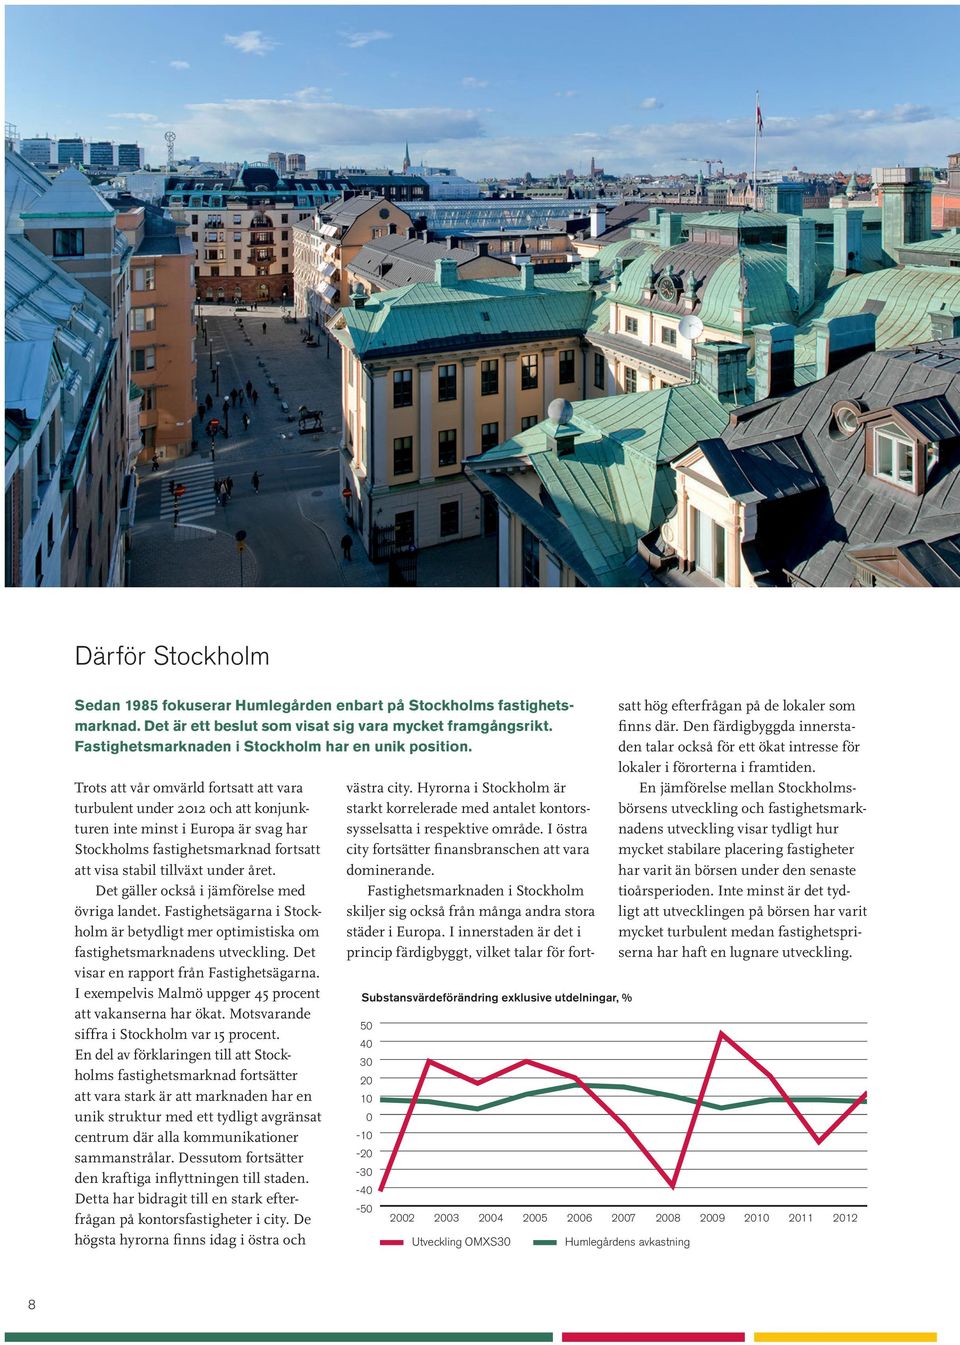 Trots att vår omvärld fortsatt att vara turbulent under 2012 och att konjunkturen inte minst i Europa är svag har Stockholms fastighetsmarknad fortsatt att visa stabil tillväxt under året.